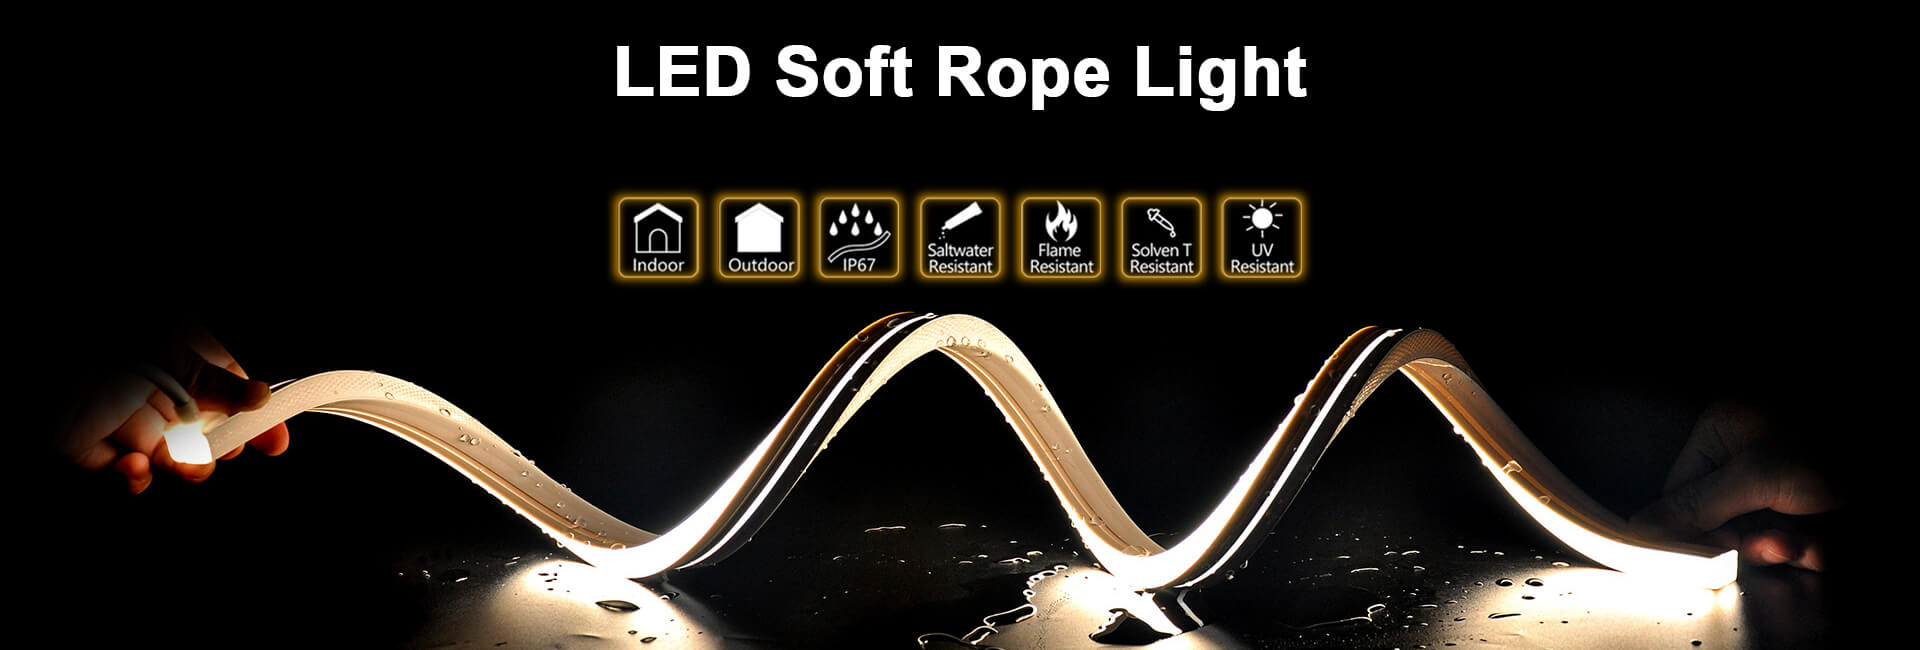 Tekhol LED rope light BANNER